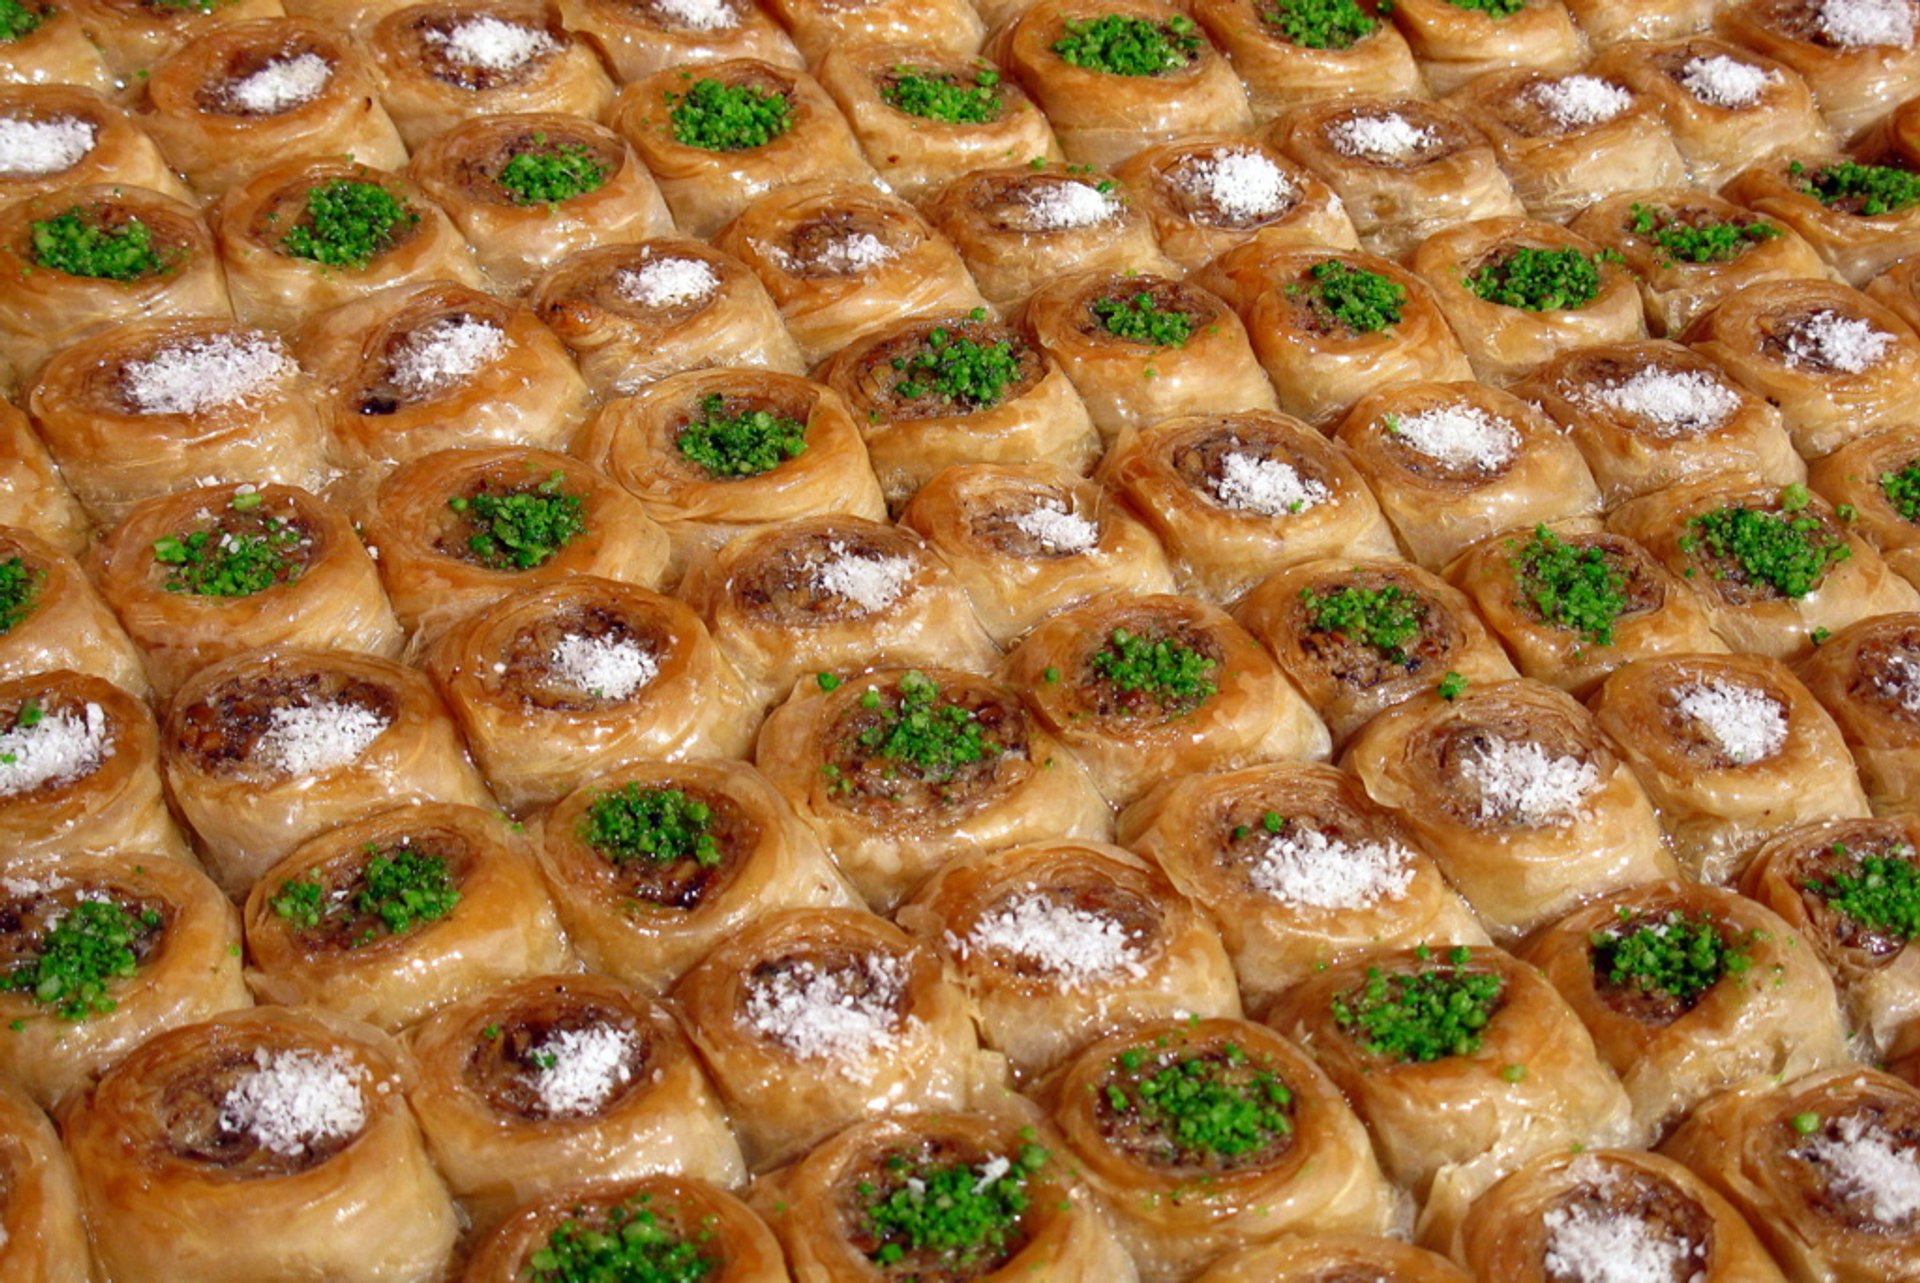 Fest des Fastenbrechens
oder Zuckerfest (Ramazan Bayramı)